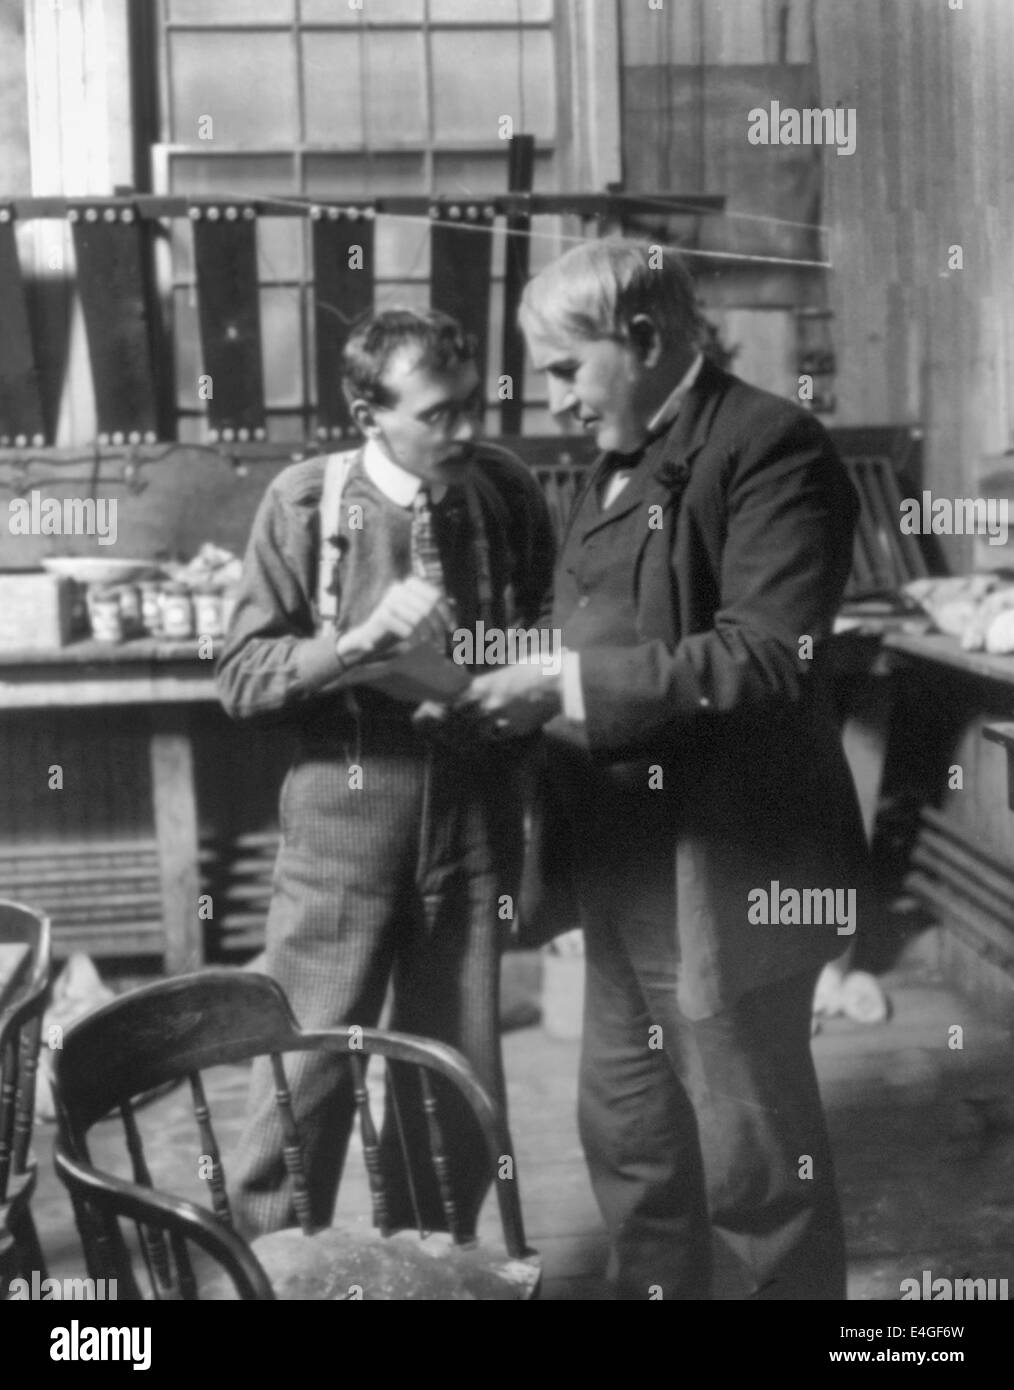 Thomas Alva Edison, debout dans son laboratoire, discuter d'un problème avec un ouvrier, vers 1906 Banque D'Images